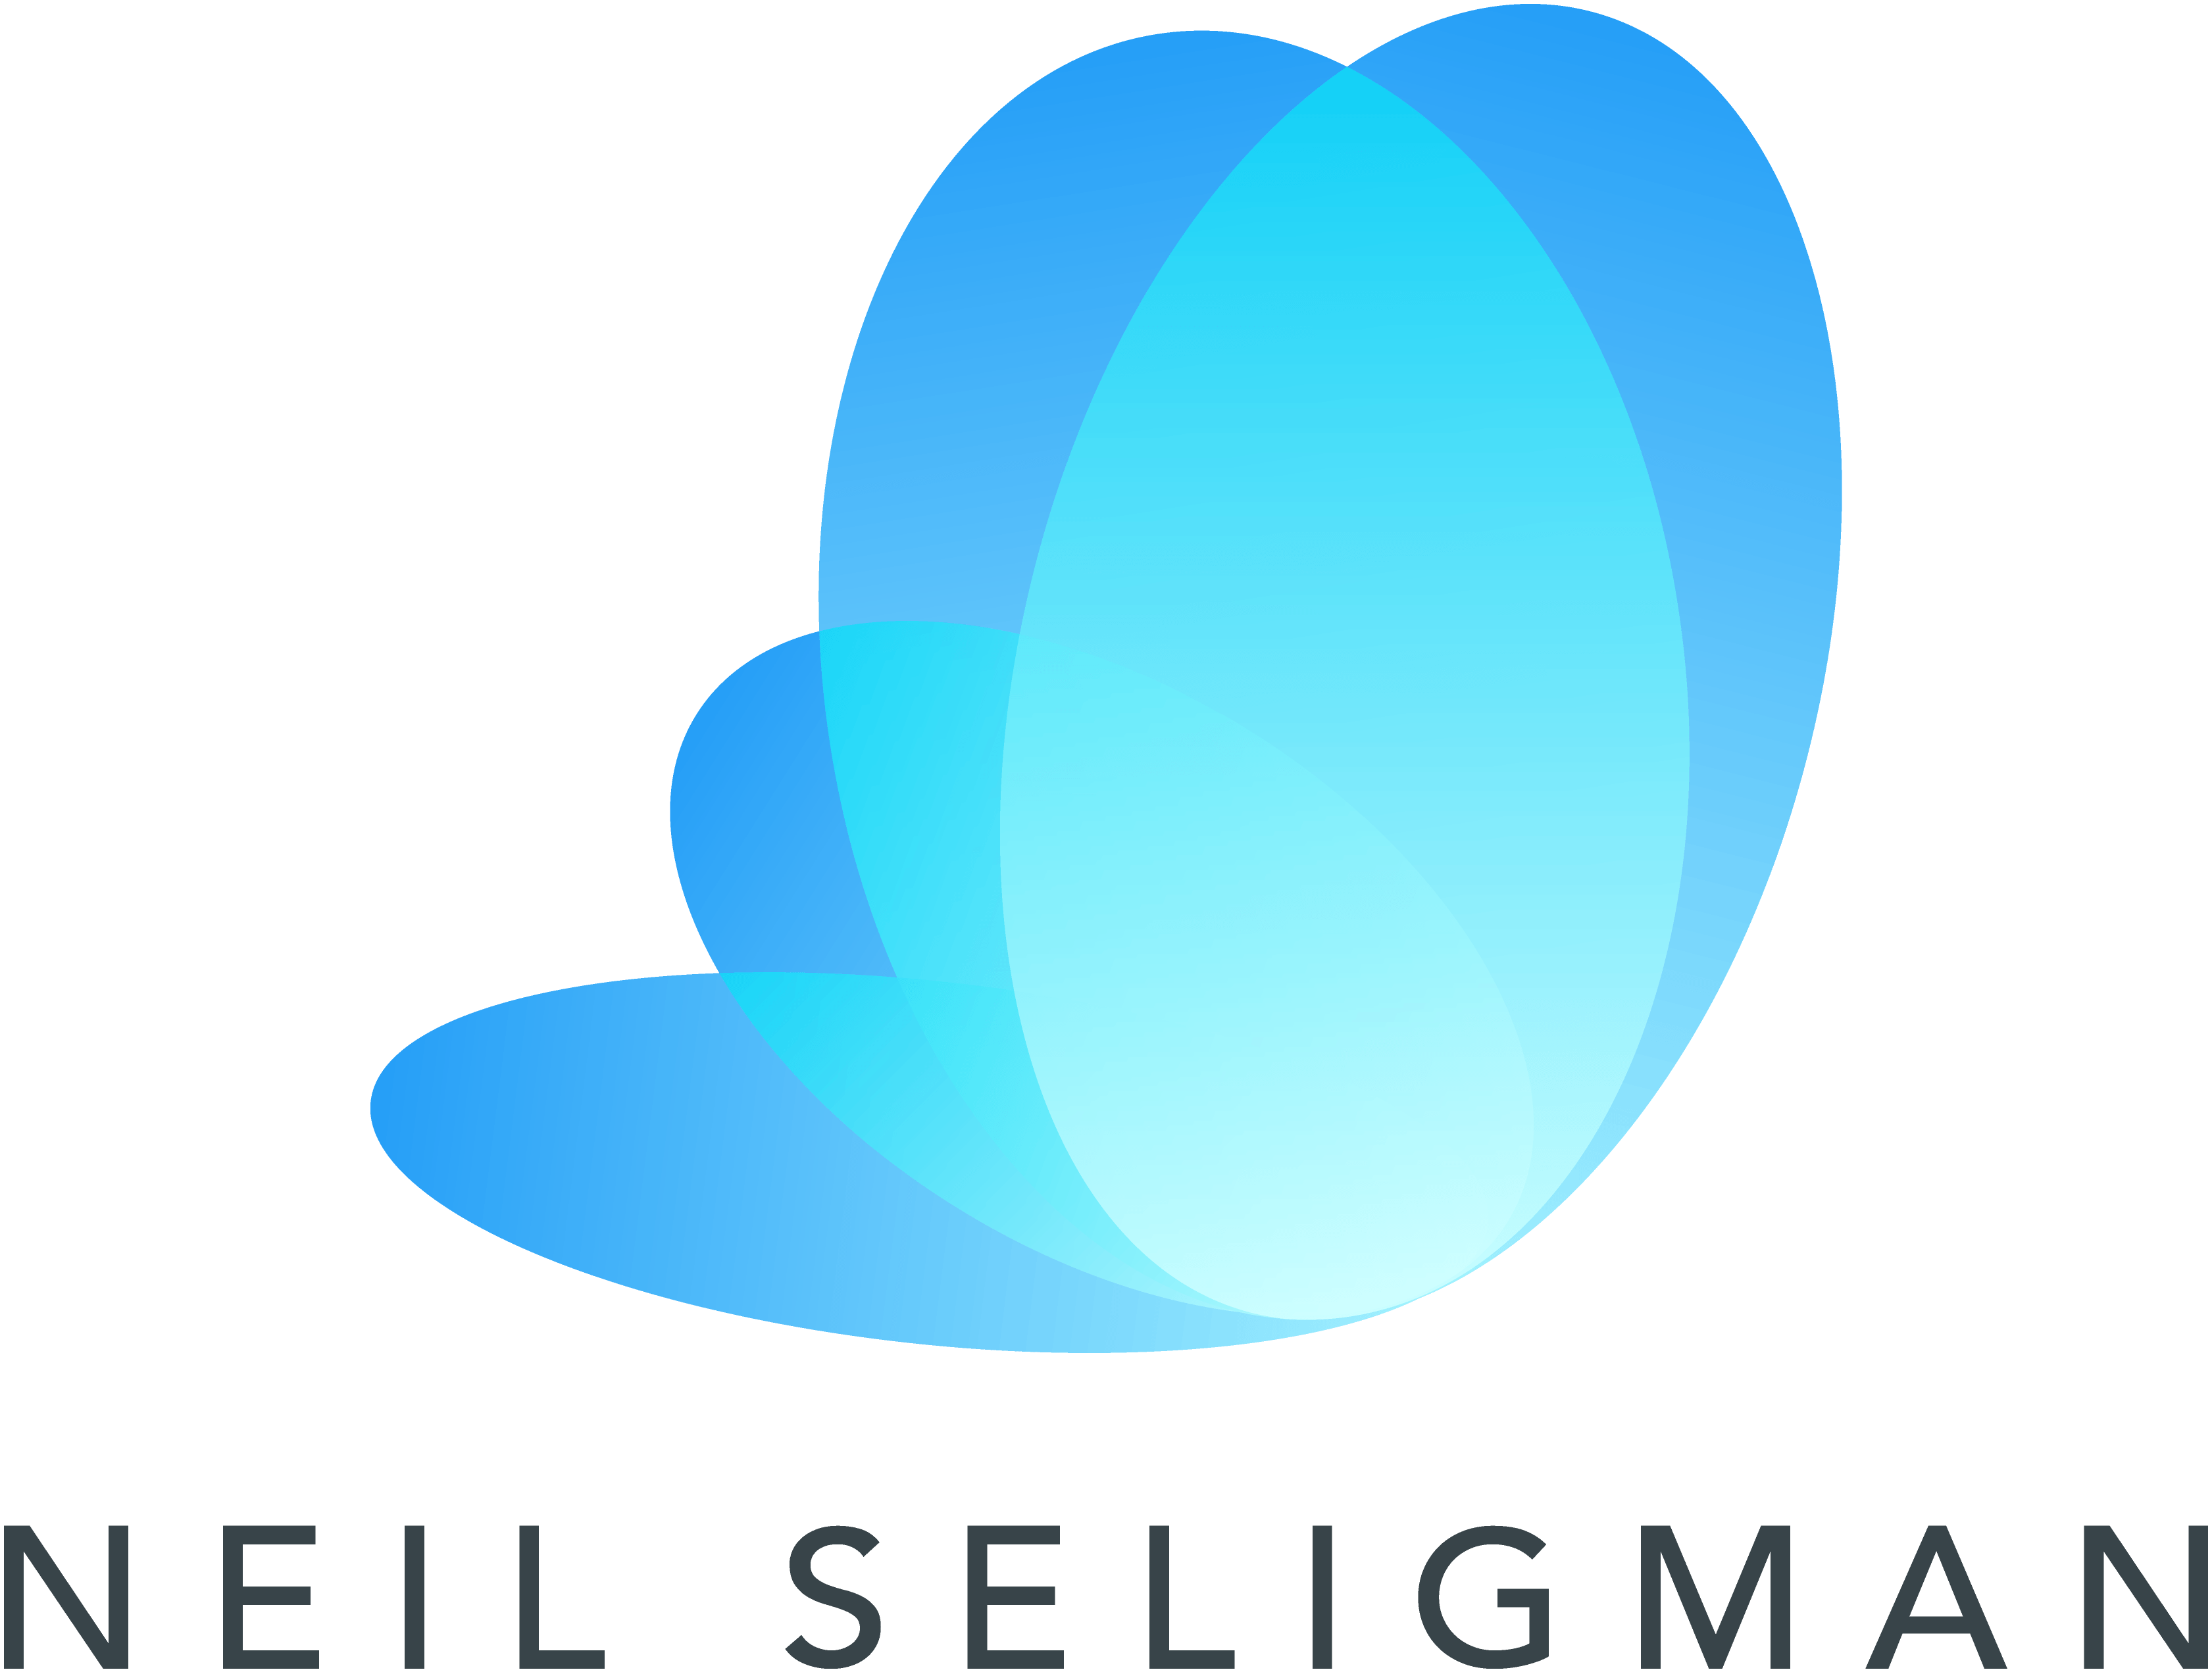 Neil Logo - Neil Seligman. Mindfulness Expert, Author & Inspirational Speaker